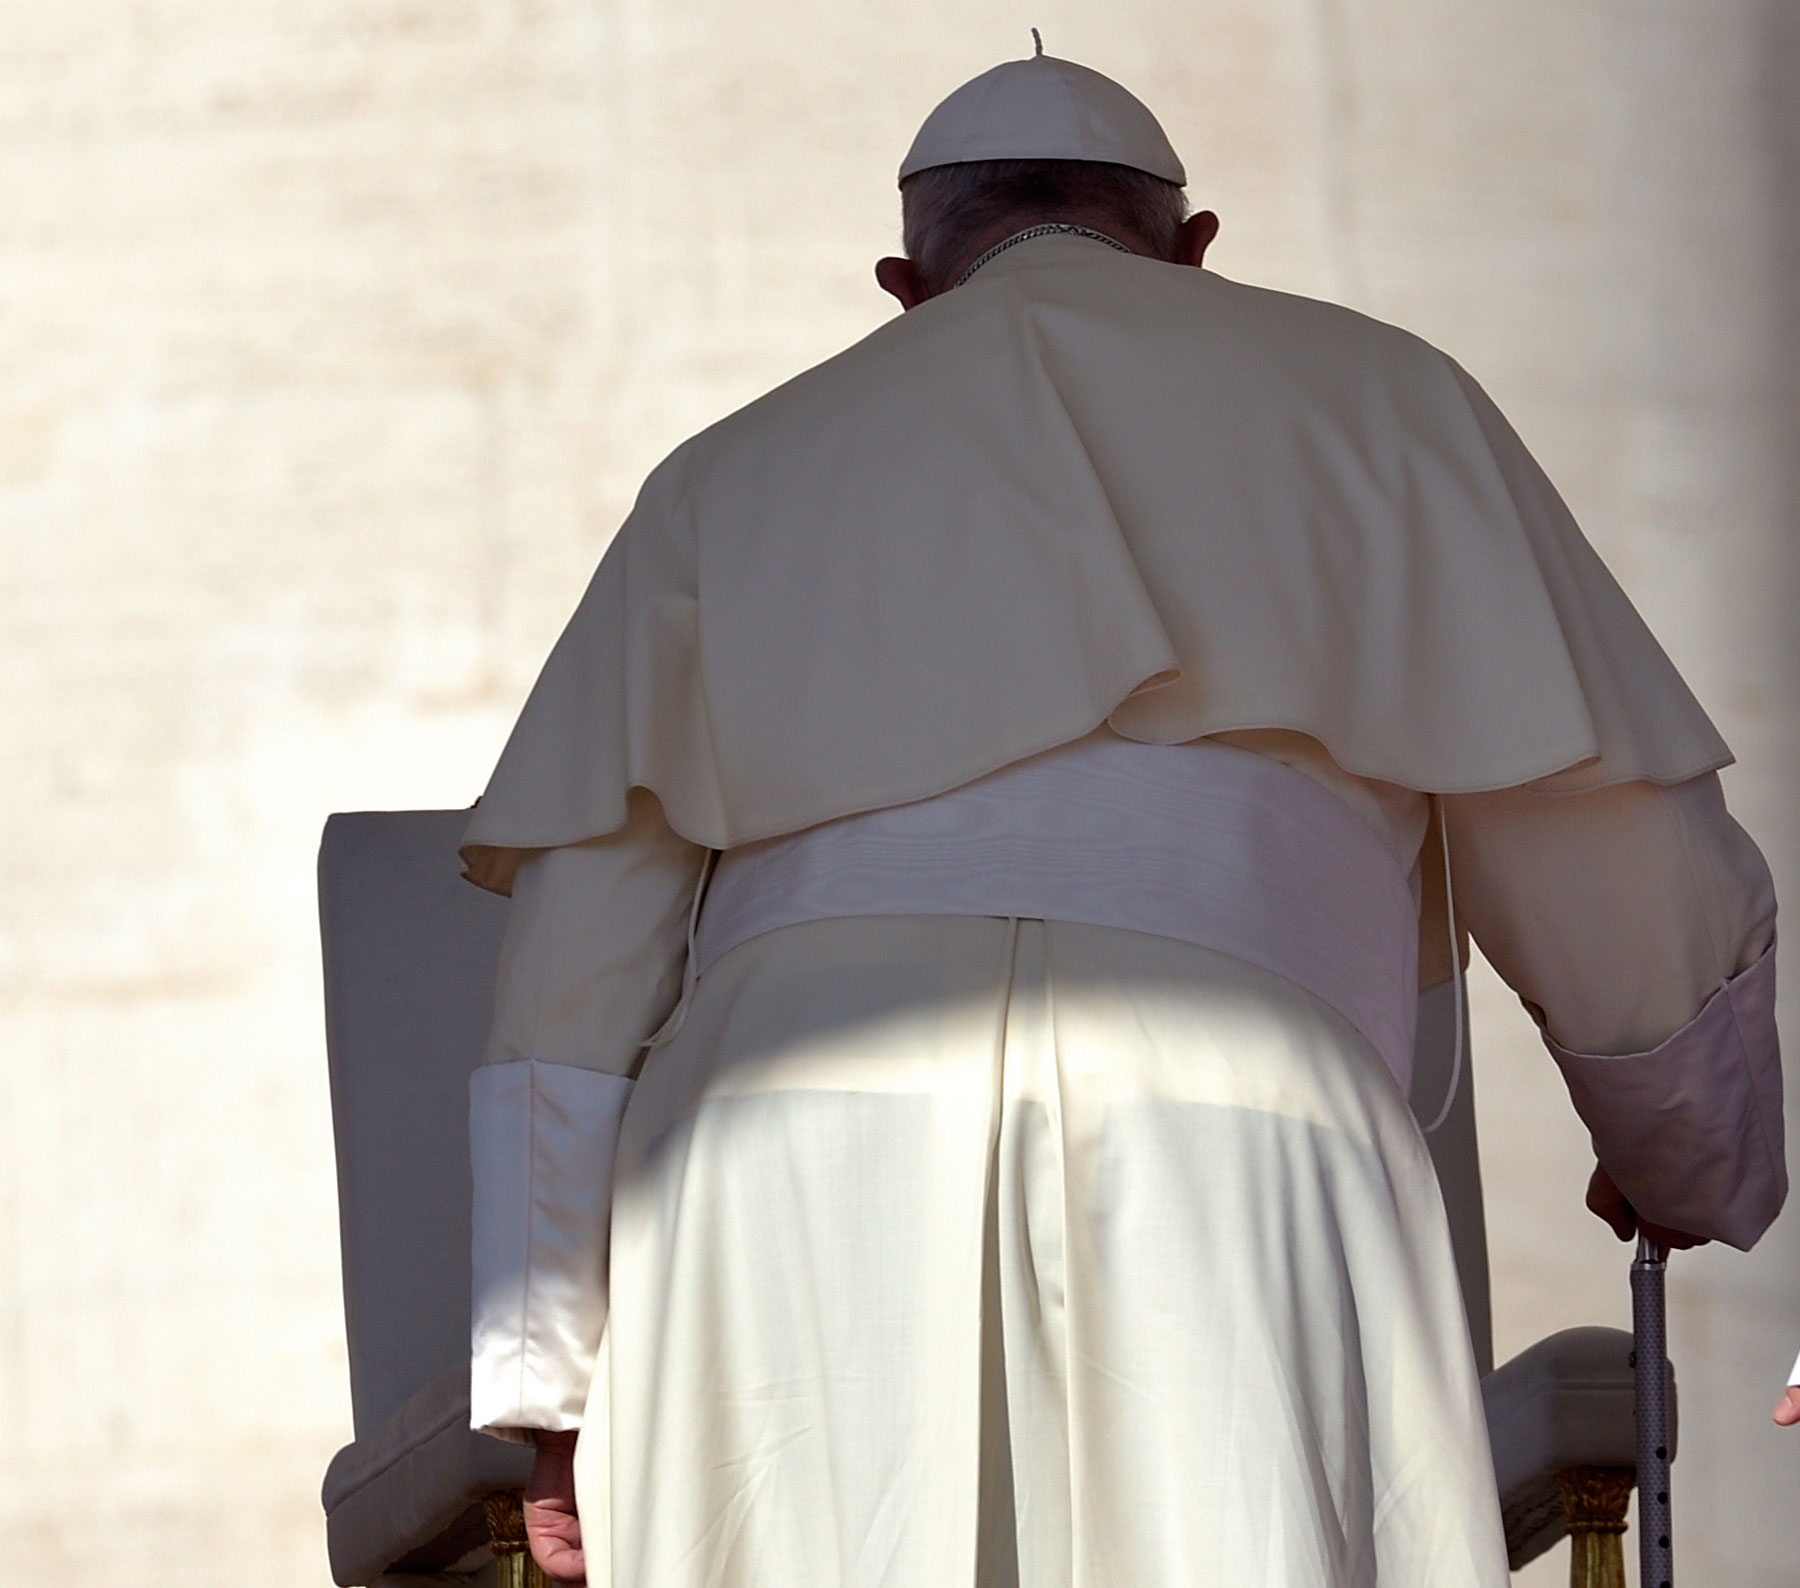 El papa Francisco contra el "paradigma tecnocrático"